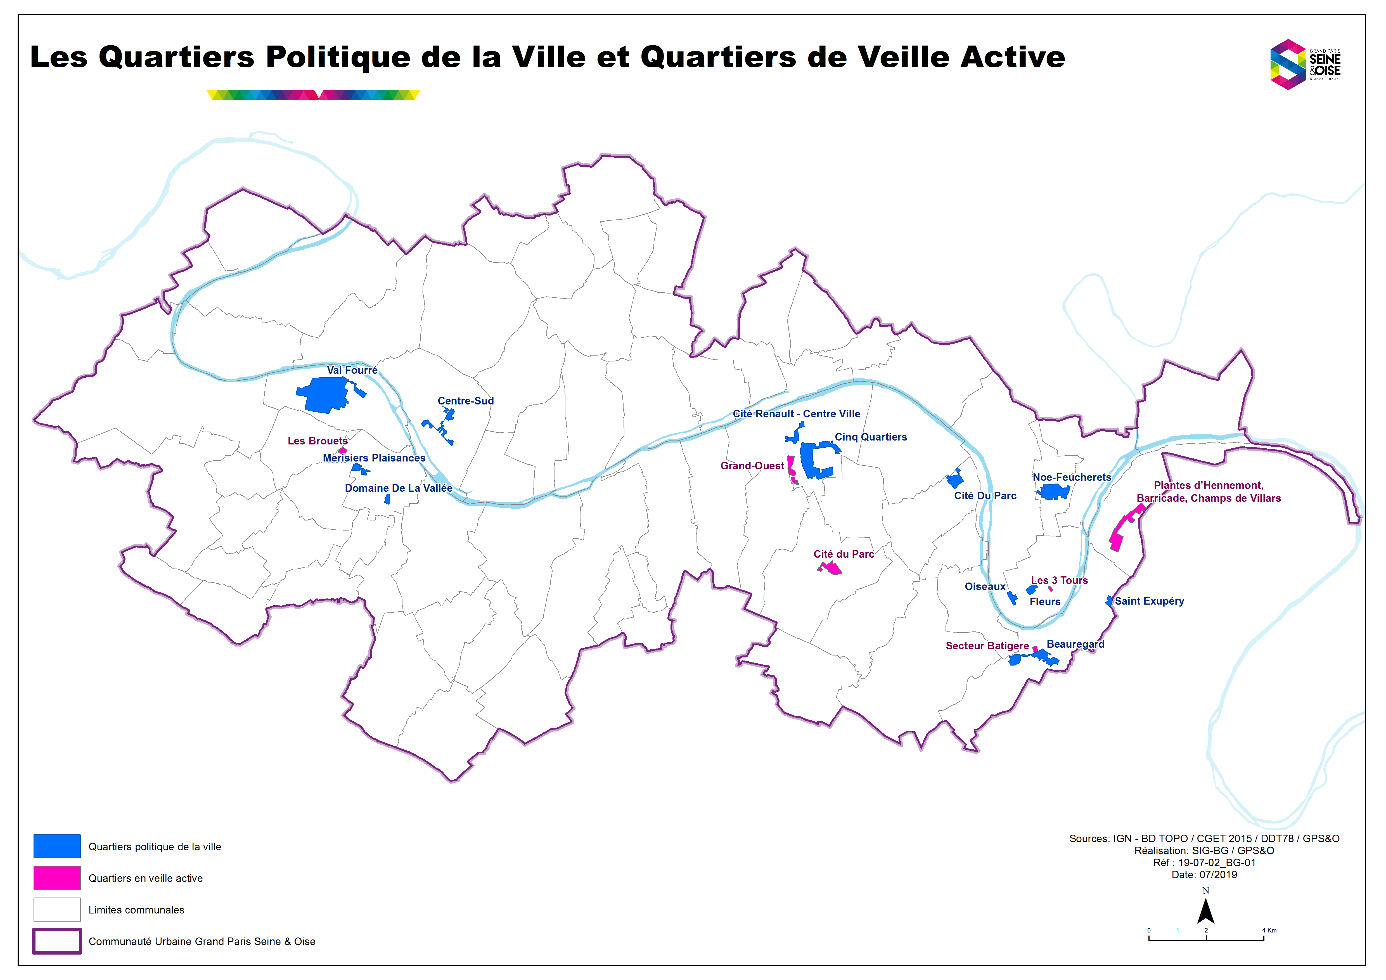 Carte des quartiers prioritaires le la politique de la ville (QPV) de GPSEO